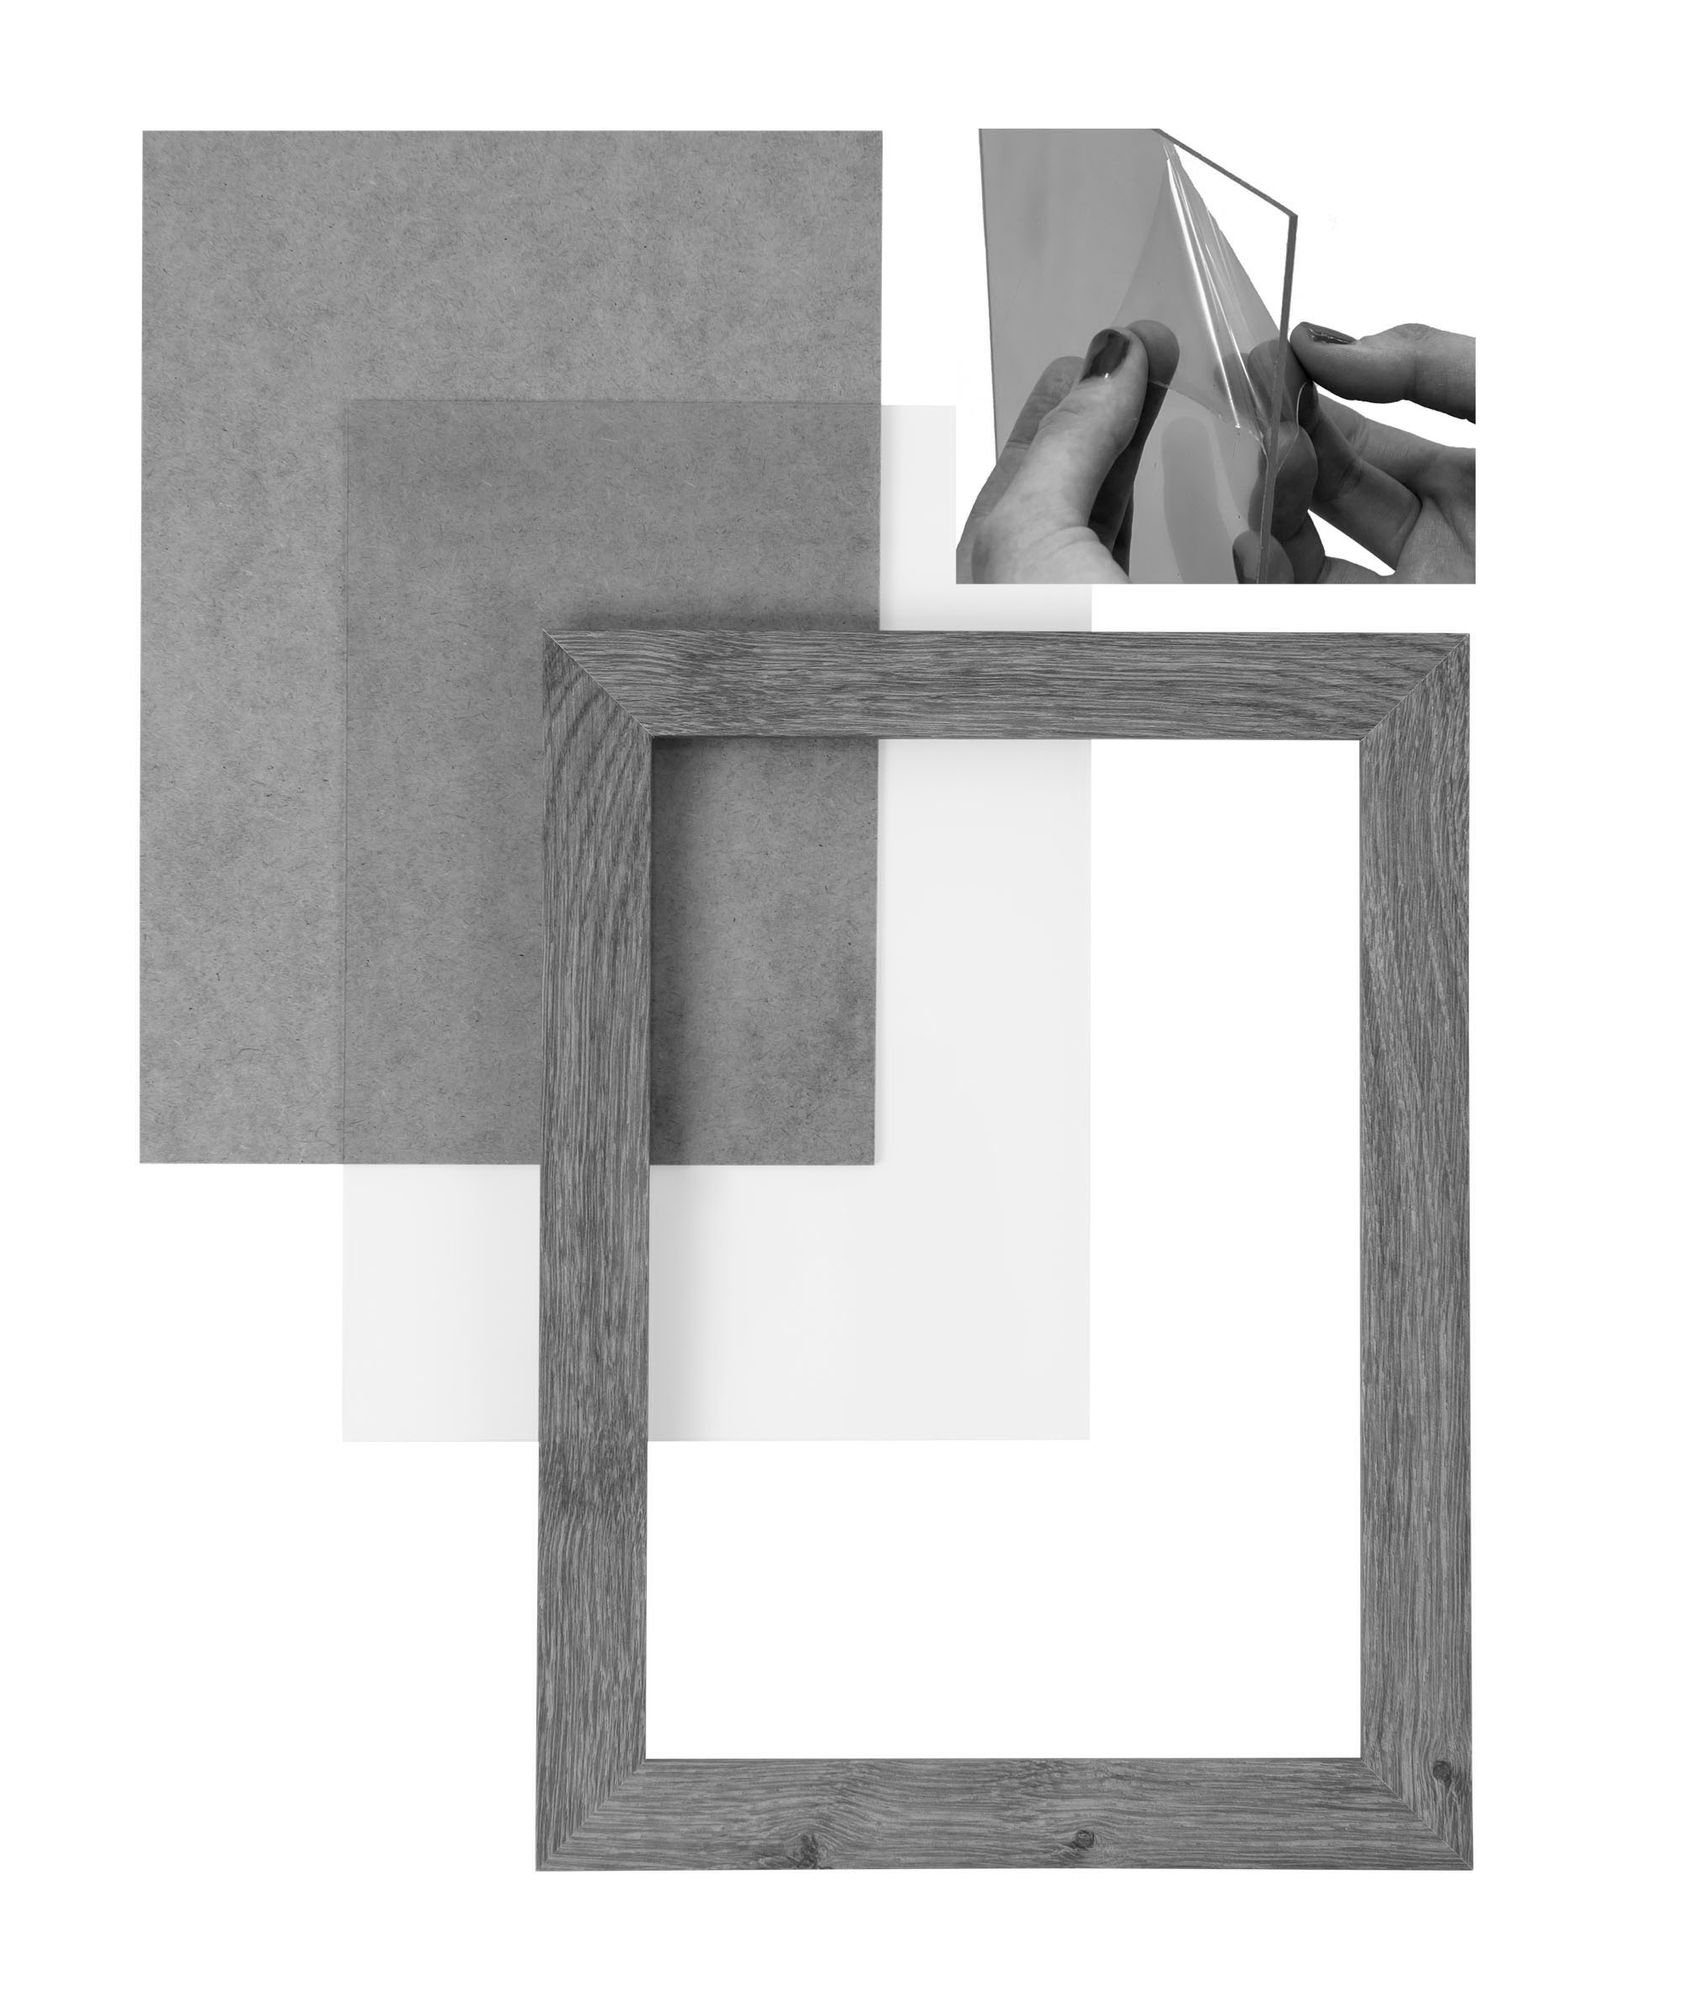 Holz in FSC® MDF Moderner Rückwand 'Collage' Rahmen Bilderrahmen CLAMARO stahlgrau eckiger Acrylglas, 25x80 Maß handgefertigt nach inkl. Bilderrahmen und Aufhänger Clamaro